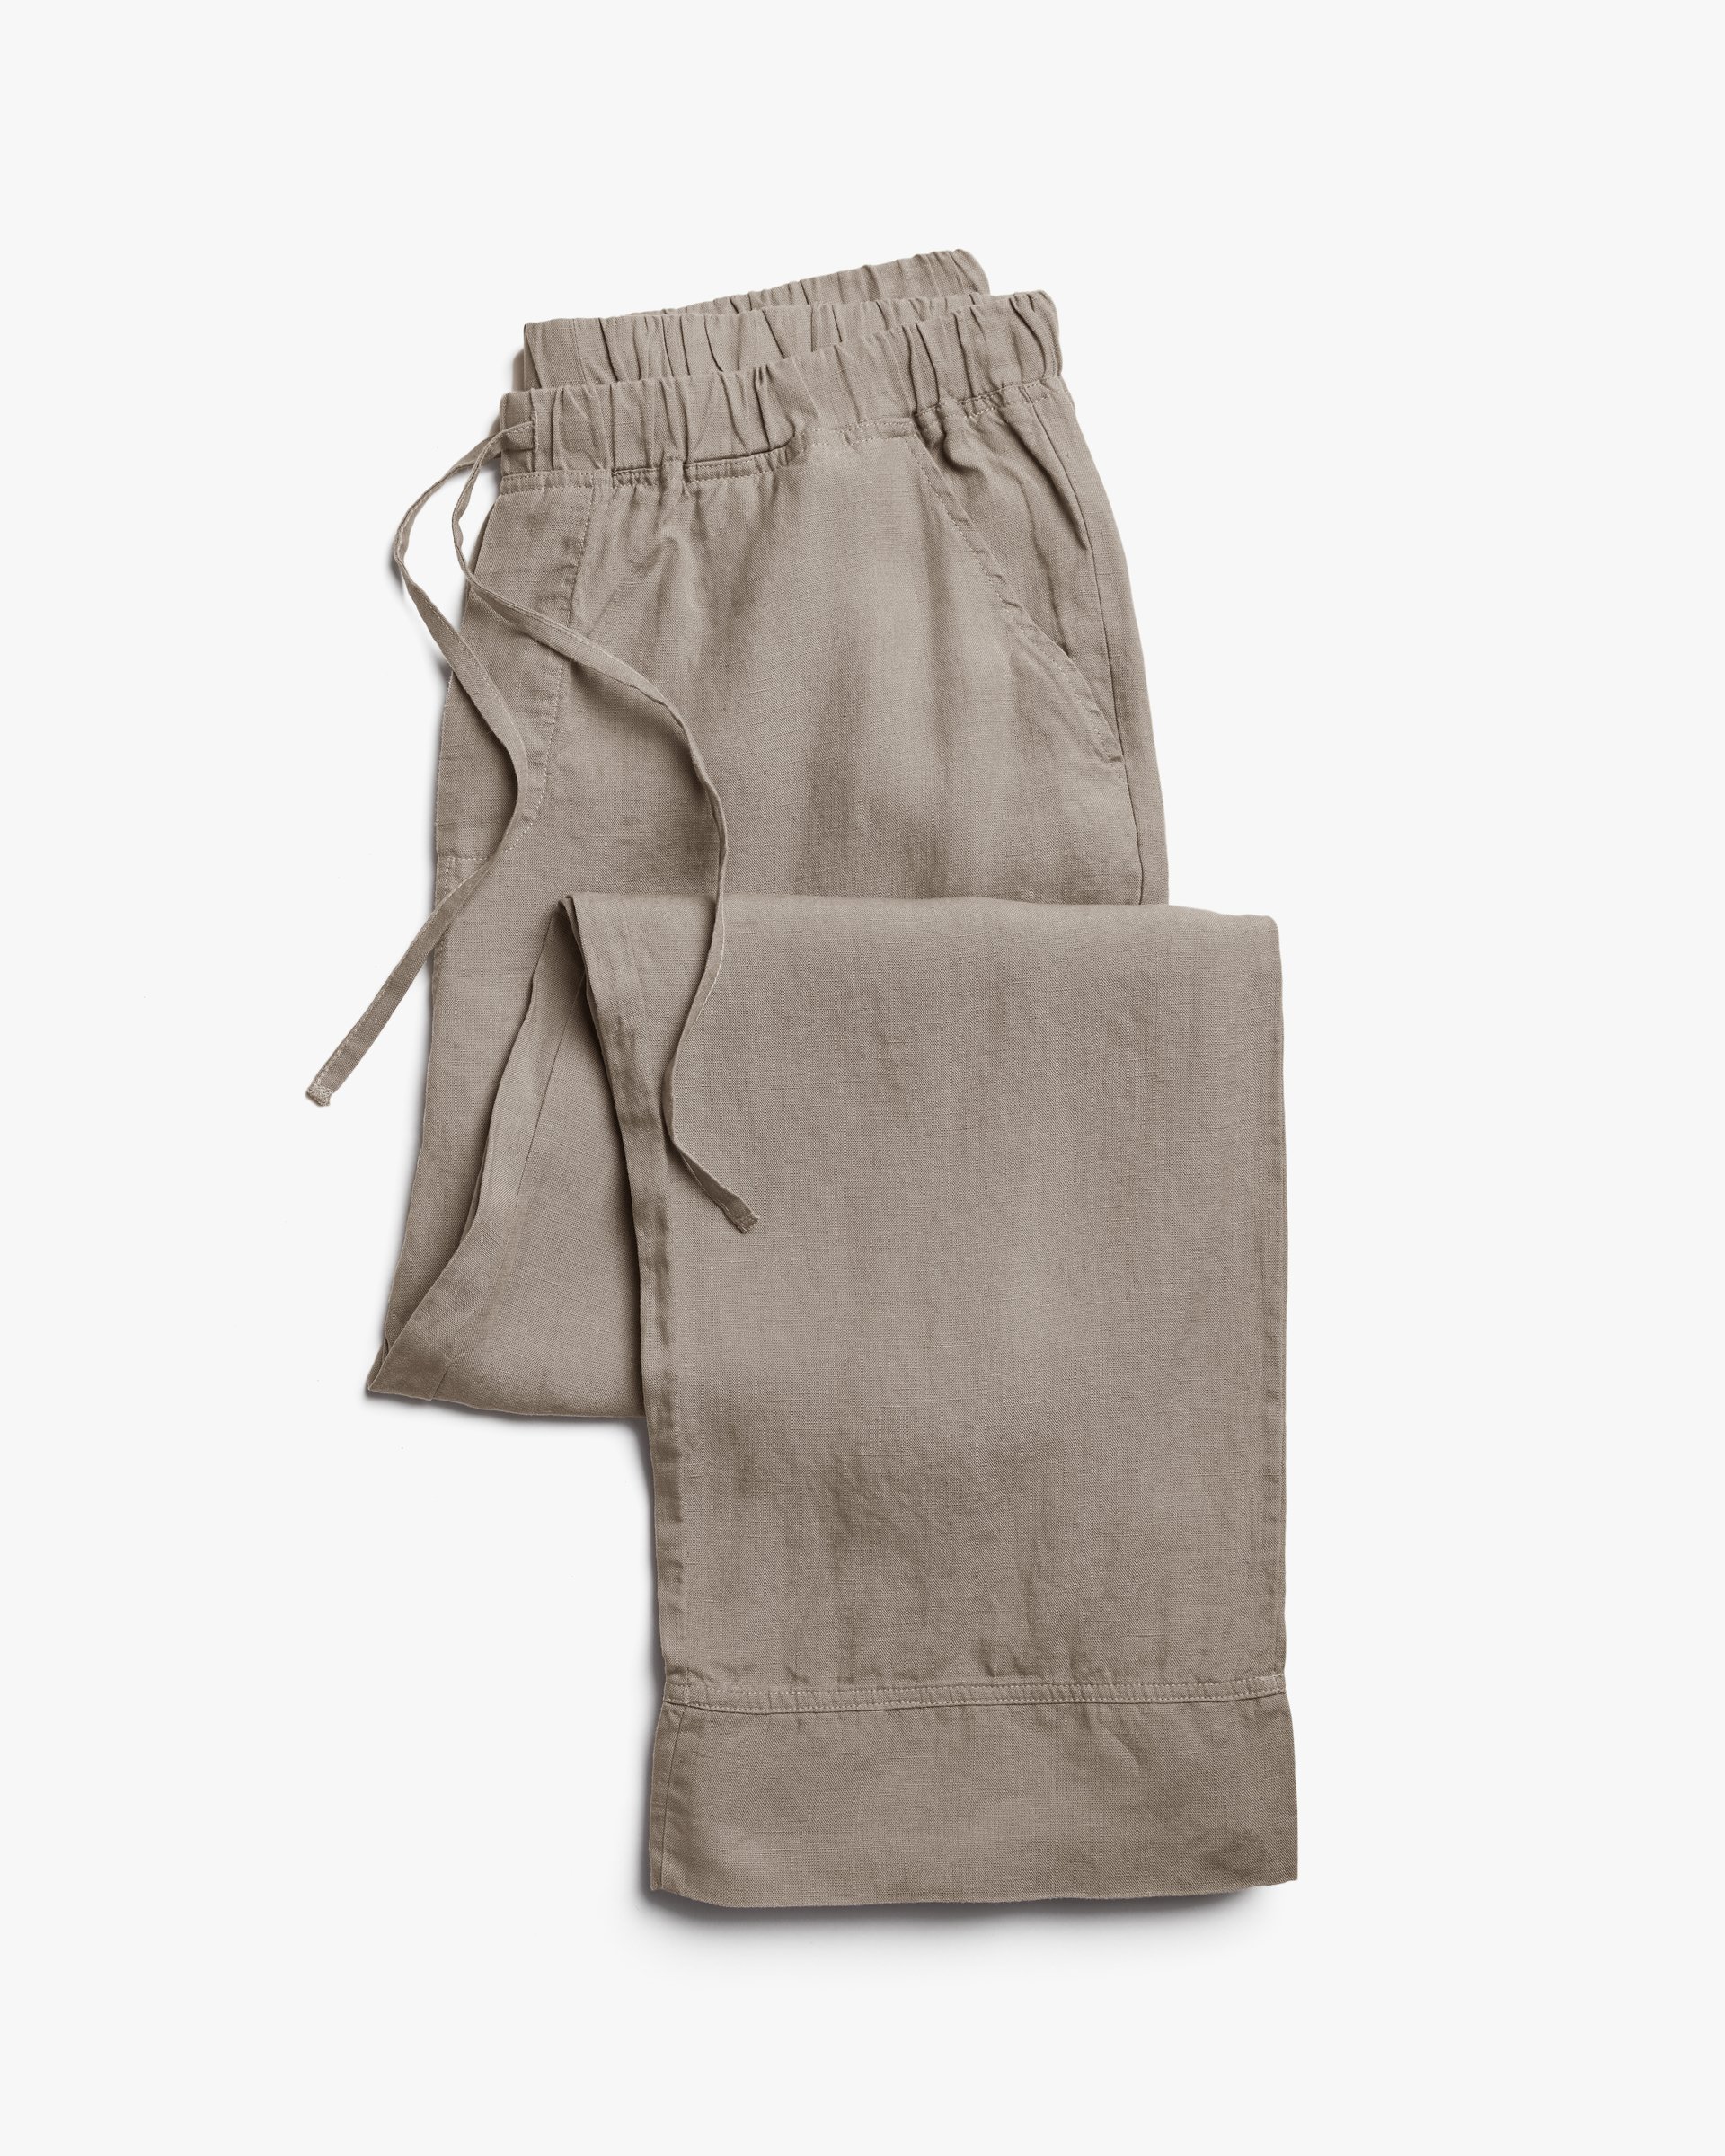 Linen Pants for Men 2023 - Best Linen Trousers For Men